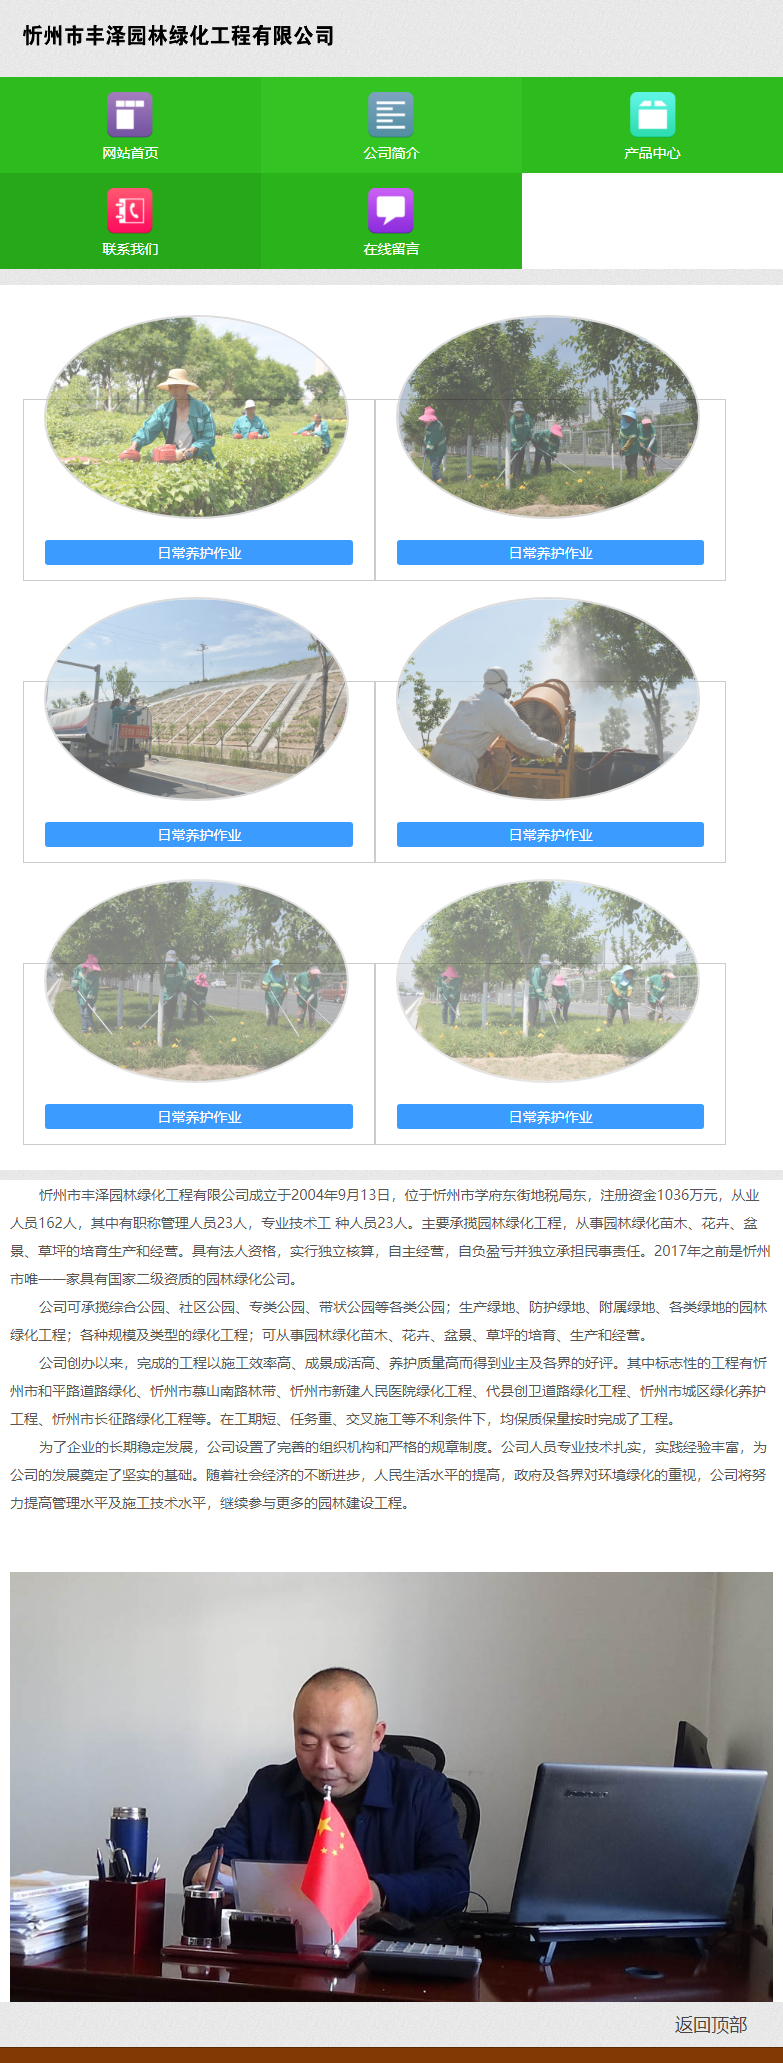 忻州市丰泽园林绿化工程有限公司网站案例